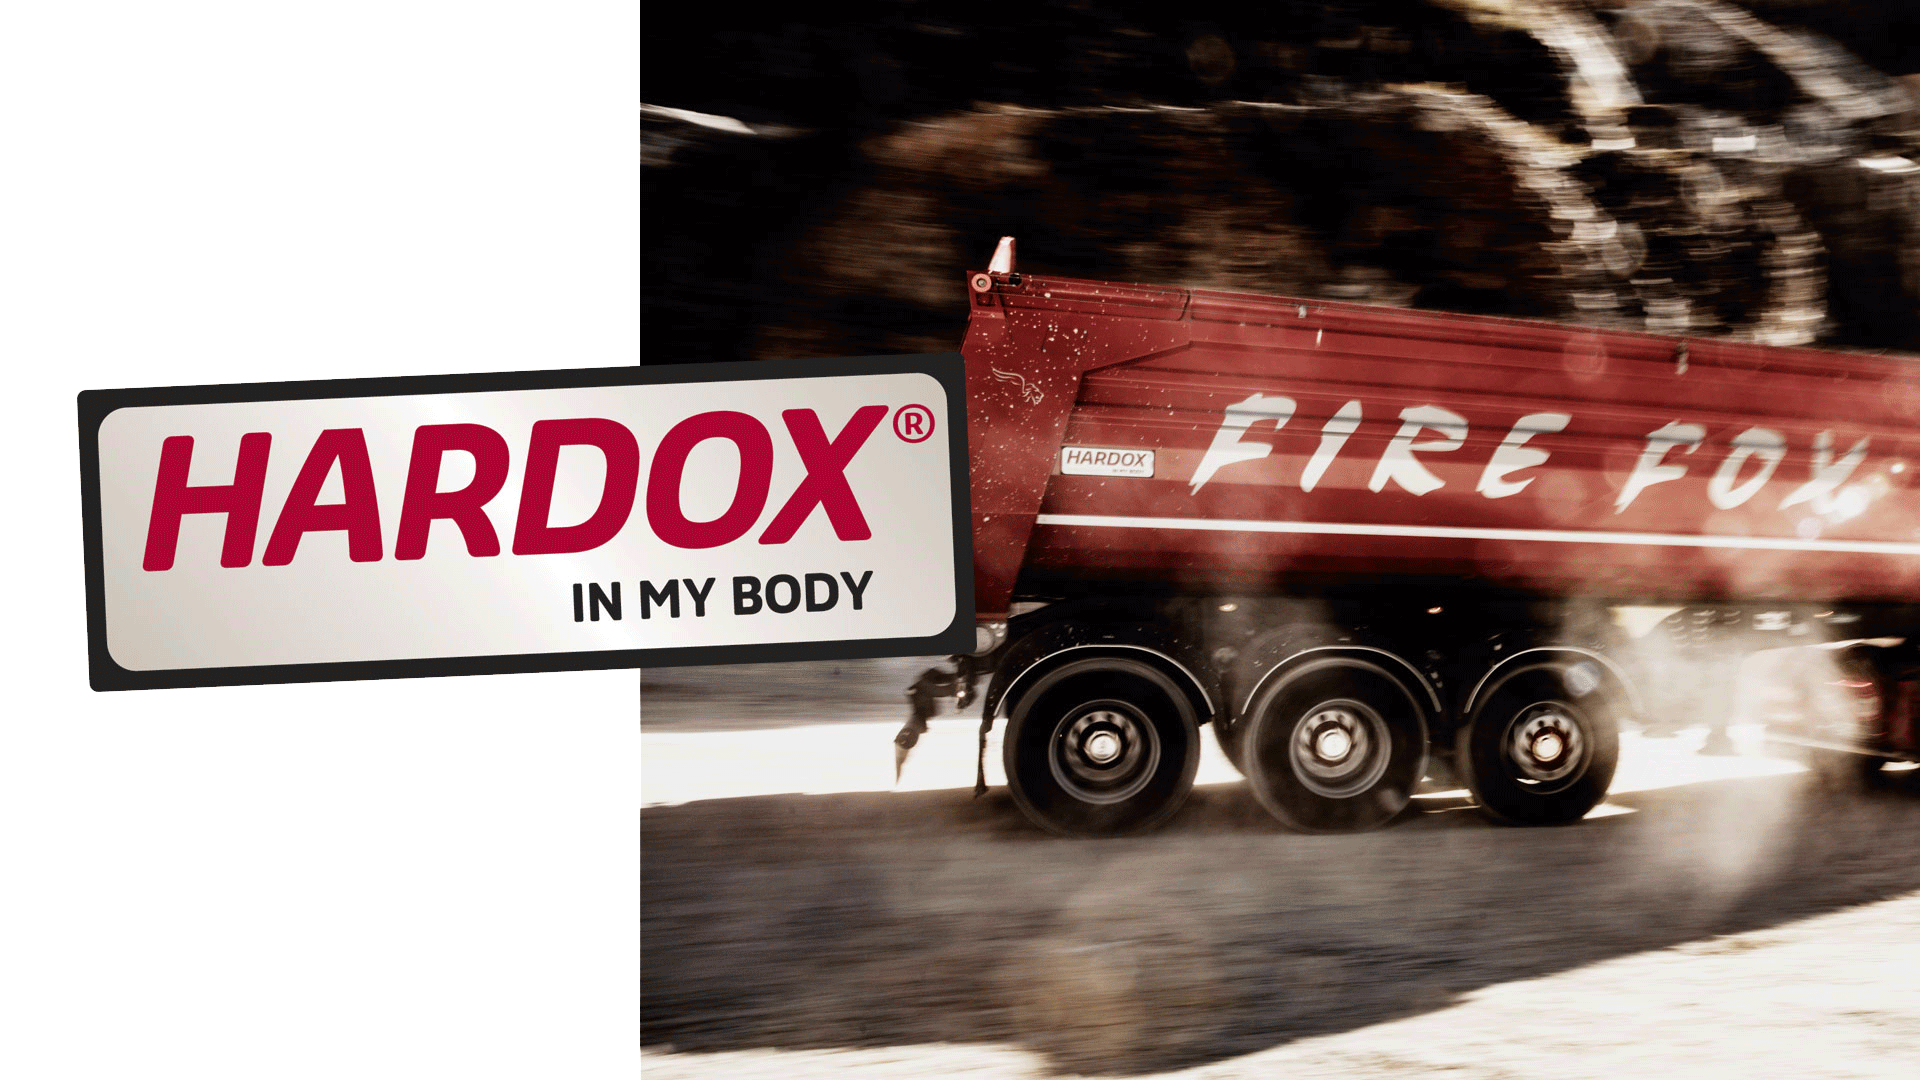 A fiery red Firefox truck body, made in Hardox® wear plate.